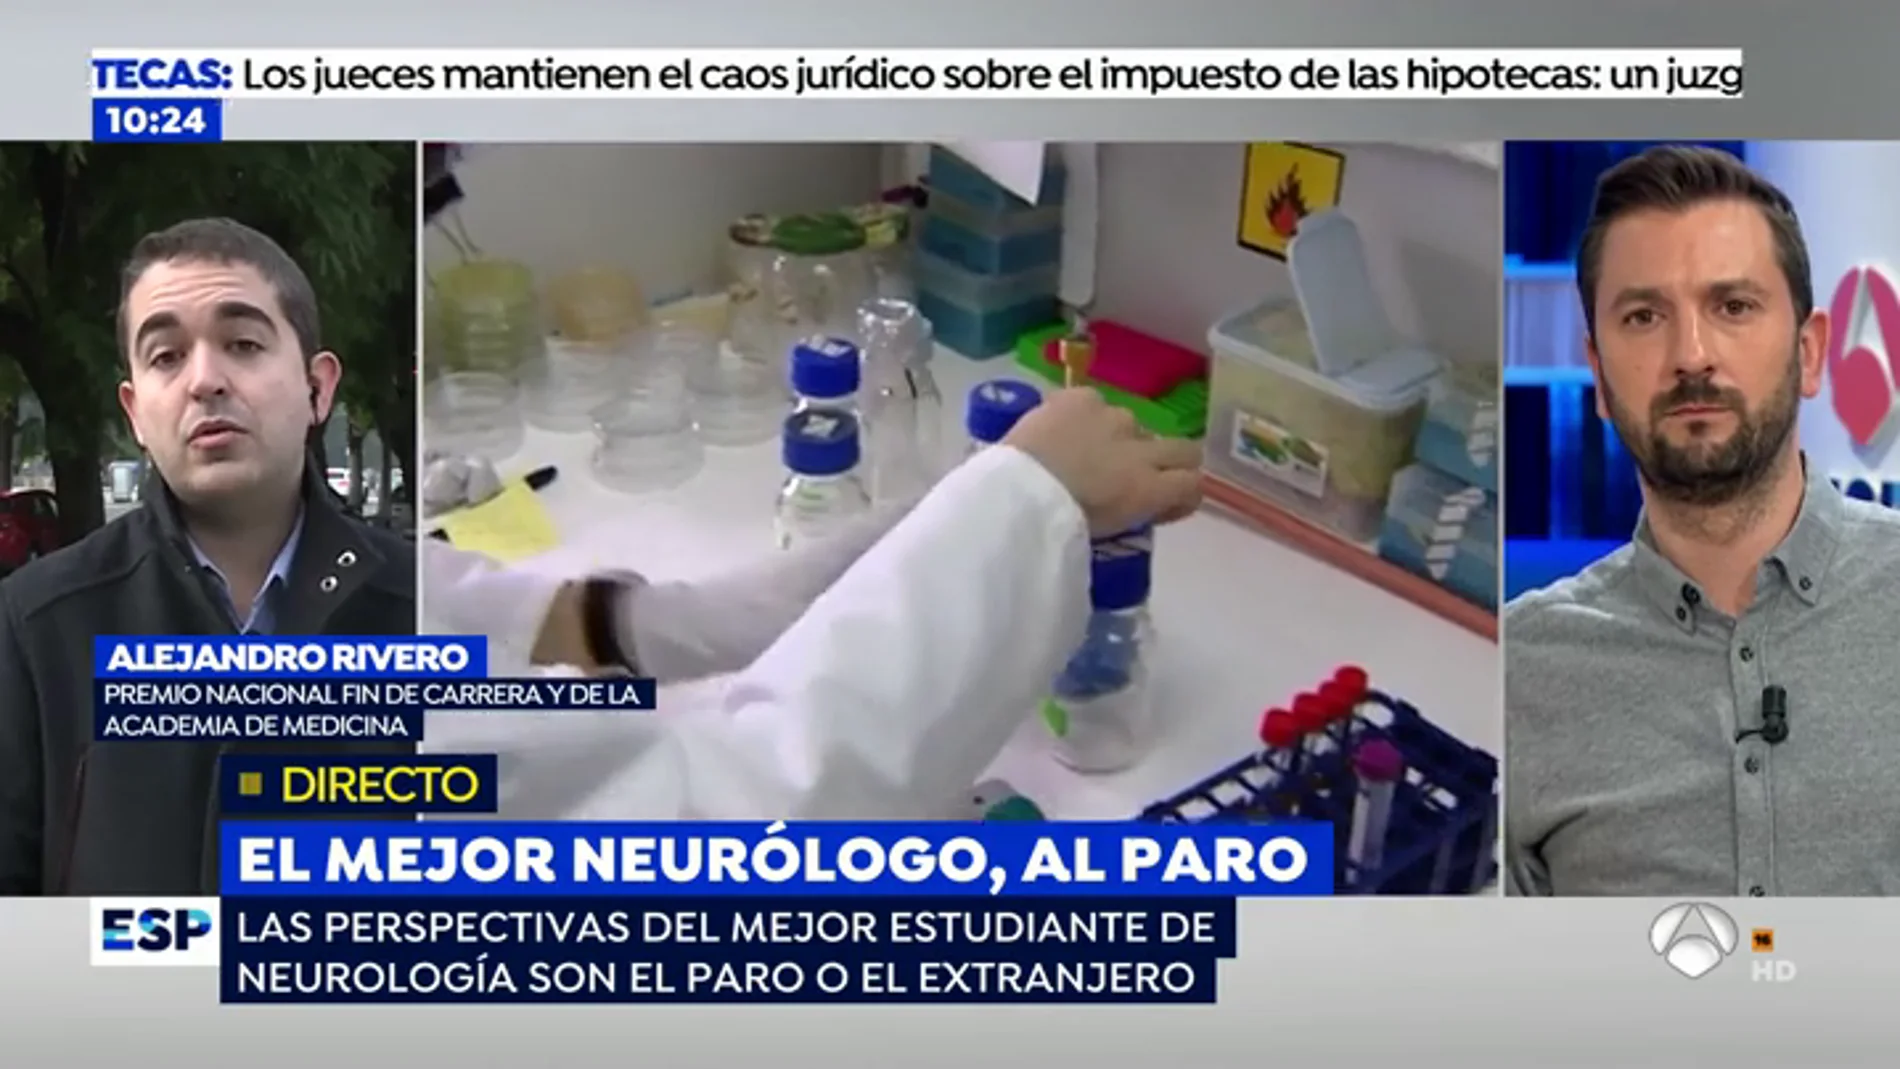 El mejor neurólogo de España, al paro: "Mi perspectiva es recorrer España entregando currículos"